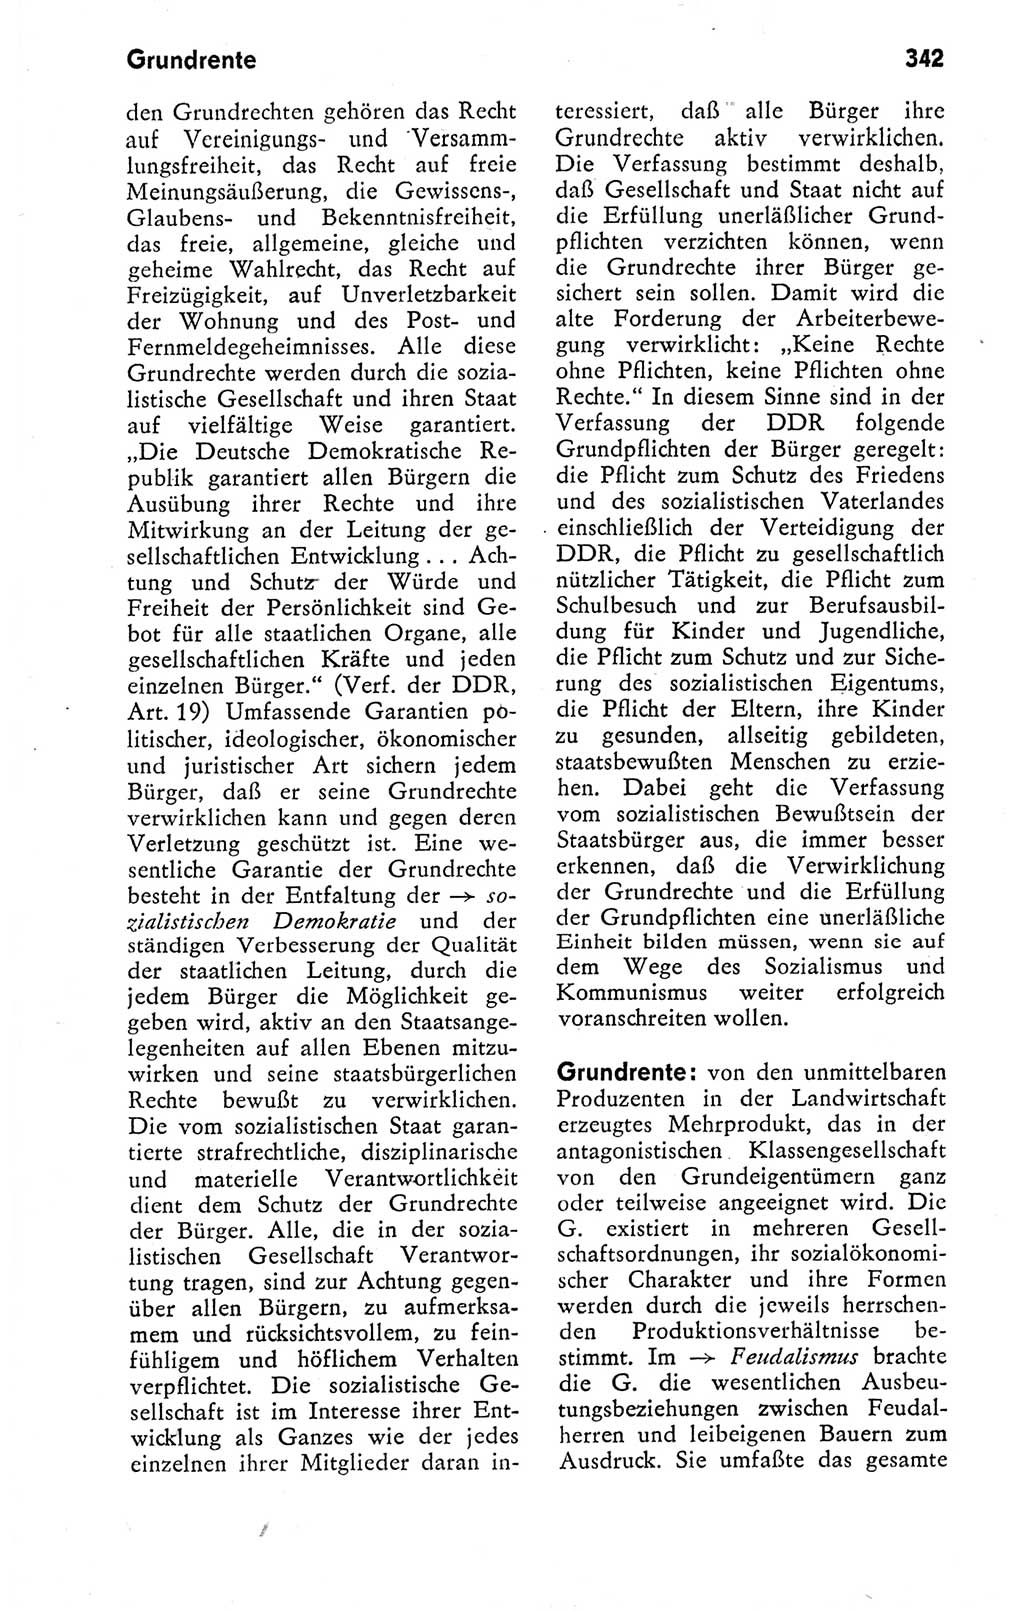 Kleines politisches Wörterbuch [Deutsche Demokratische Republik (DDR)] 1978, Seite 342 (Kl. pol. Wb. DDR 1978, S. 342)